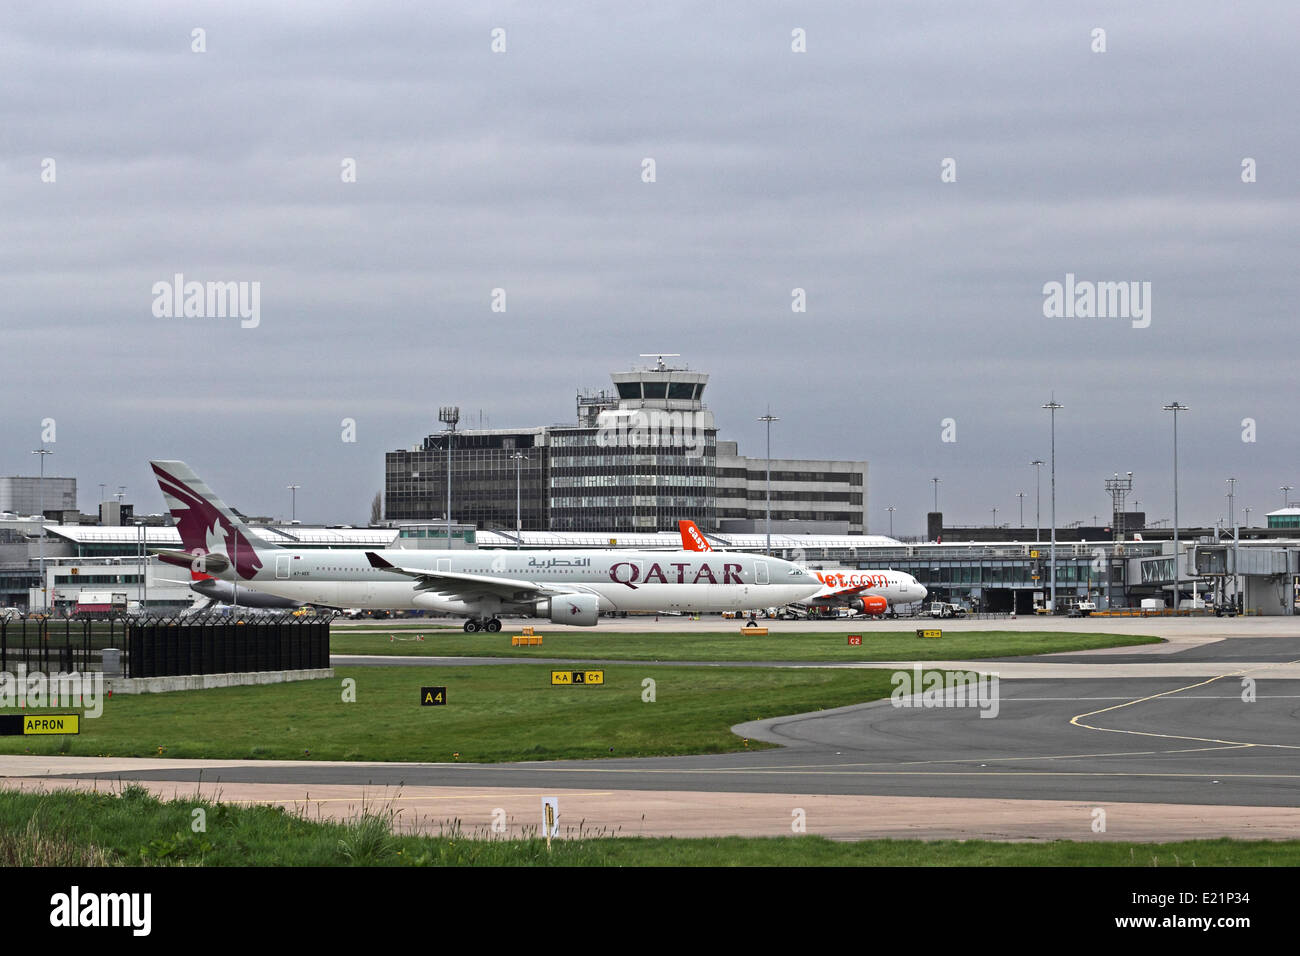 L'aéroport de Manchester, Angleterre, avec Qatar Airways Airbus A330 en premier plan Banque D'Images